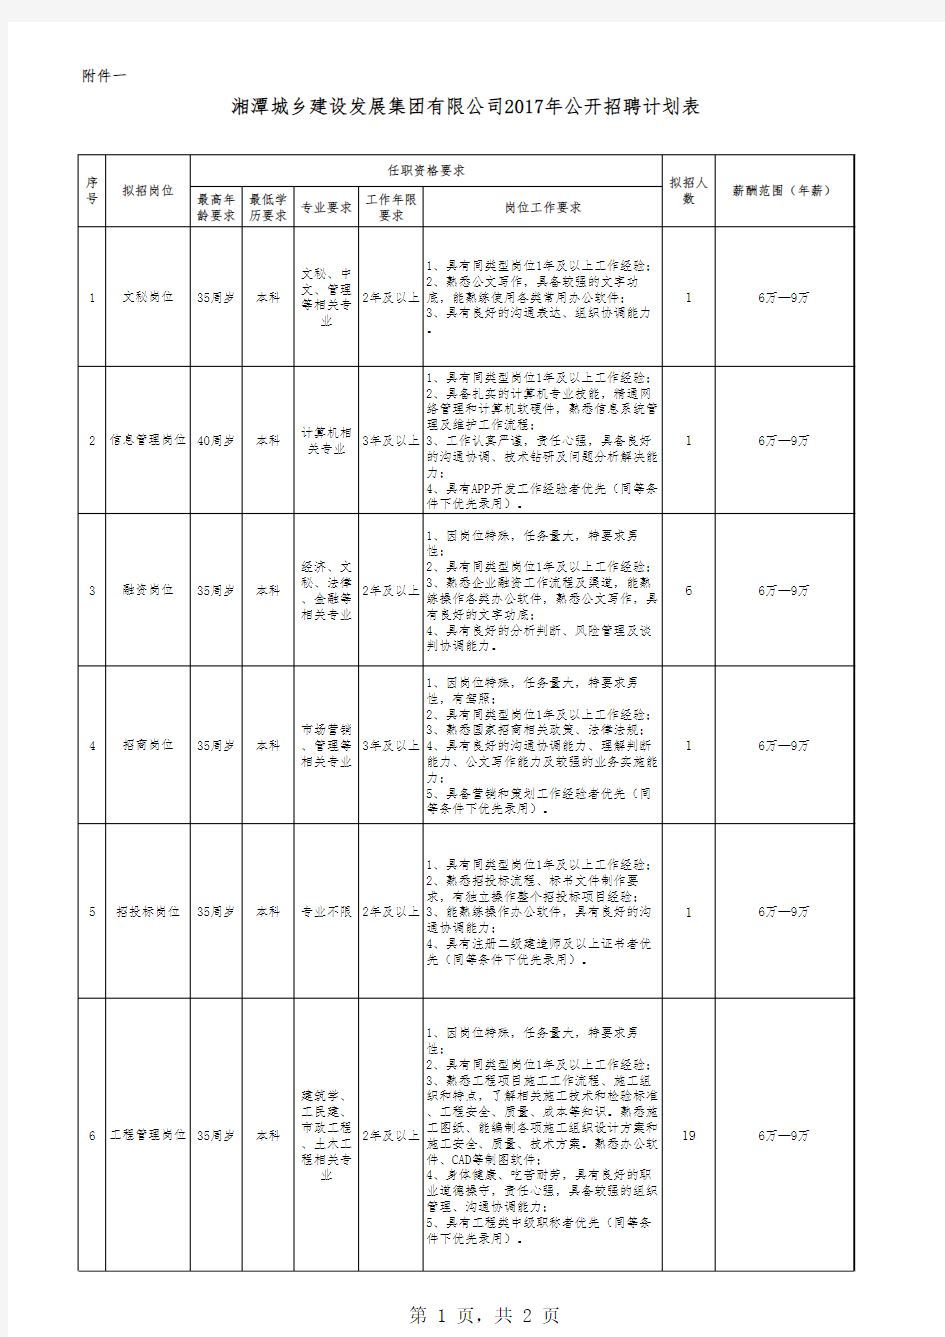 湘潭城乡建设发展集团有限公司2017年公开招聘计划表